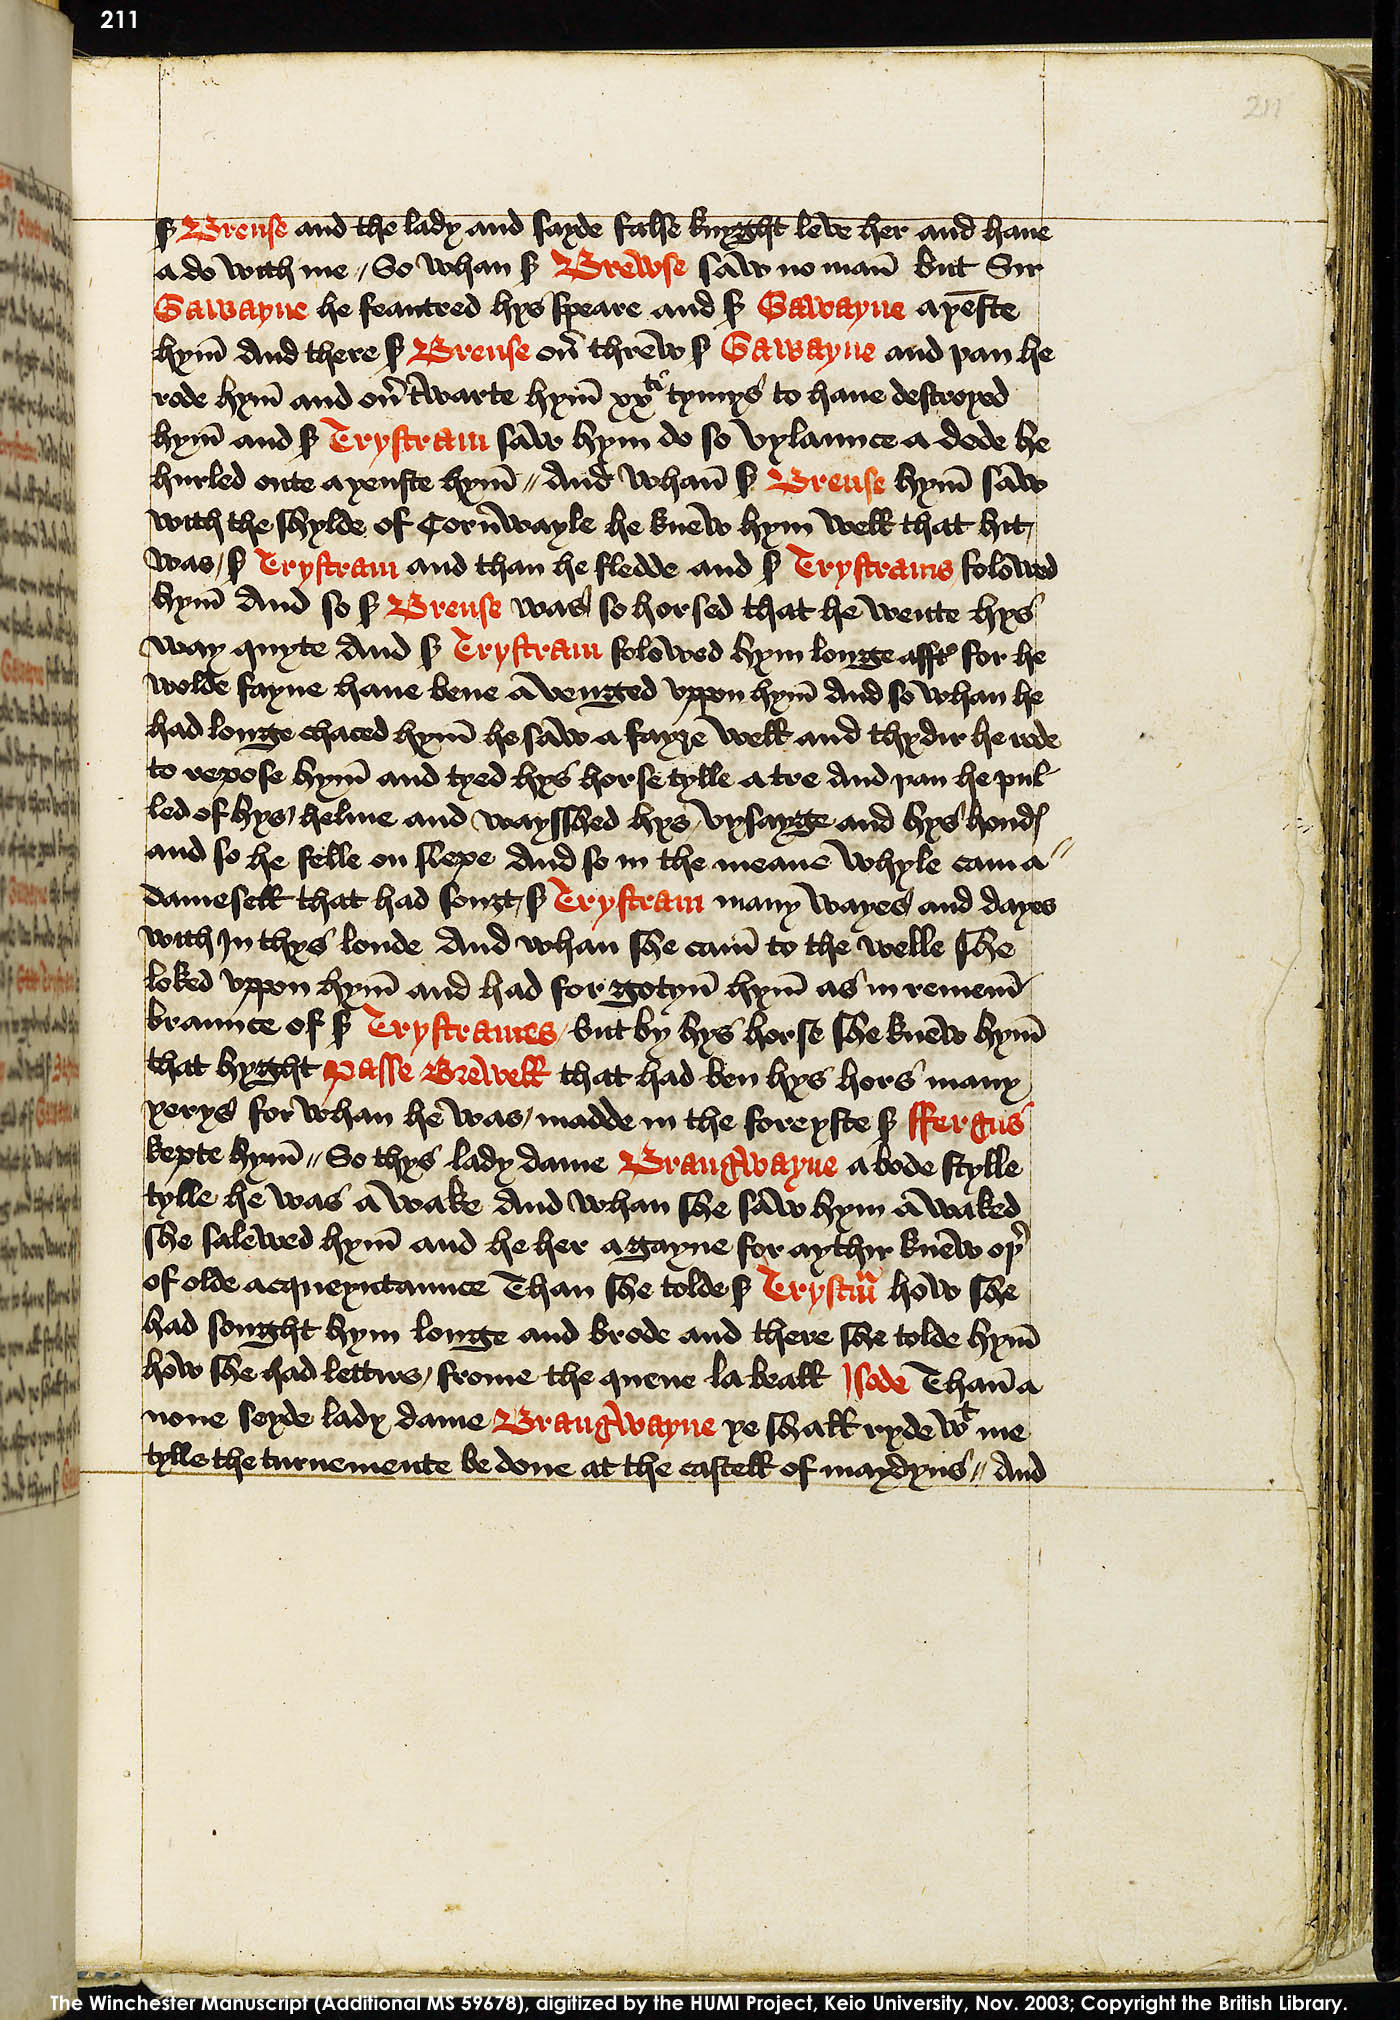 Folio 211r